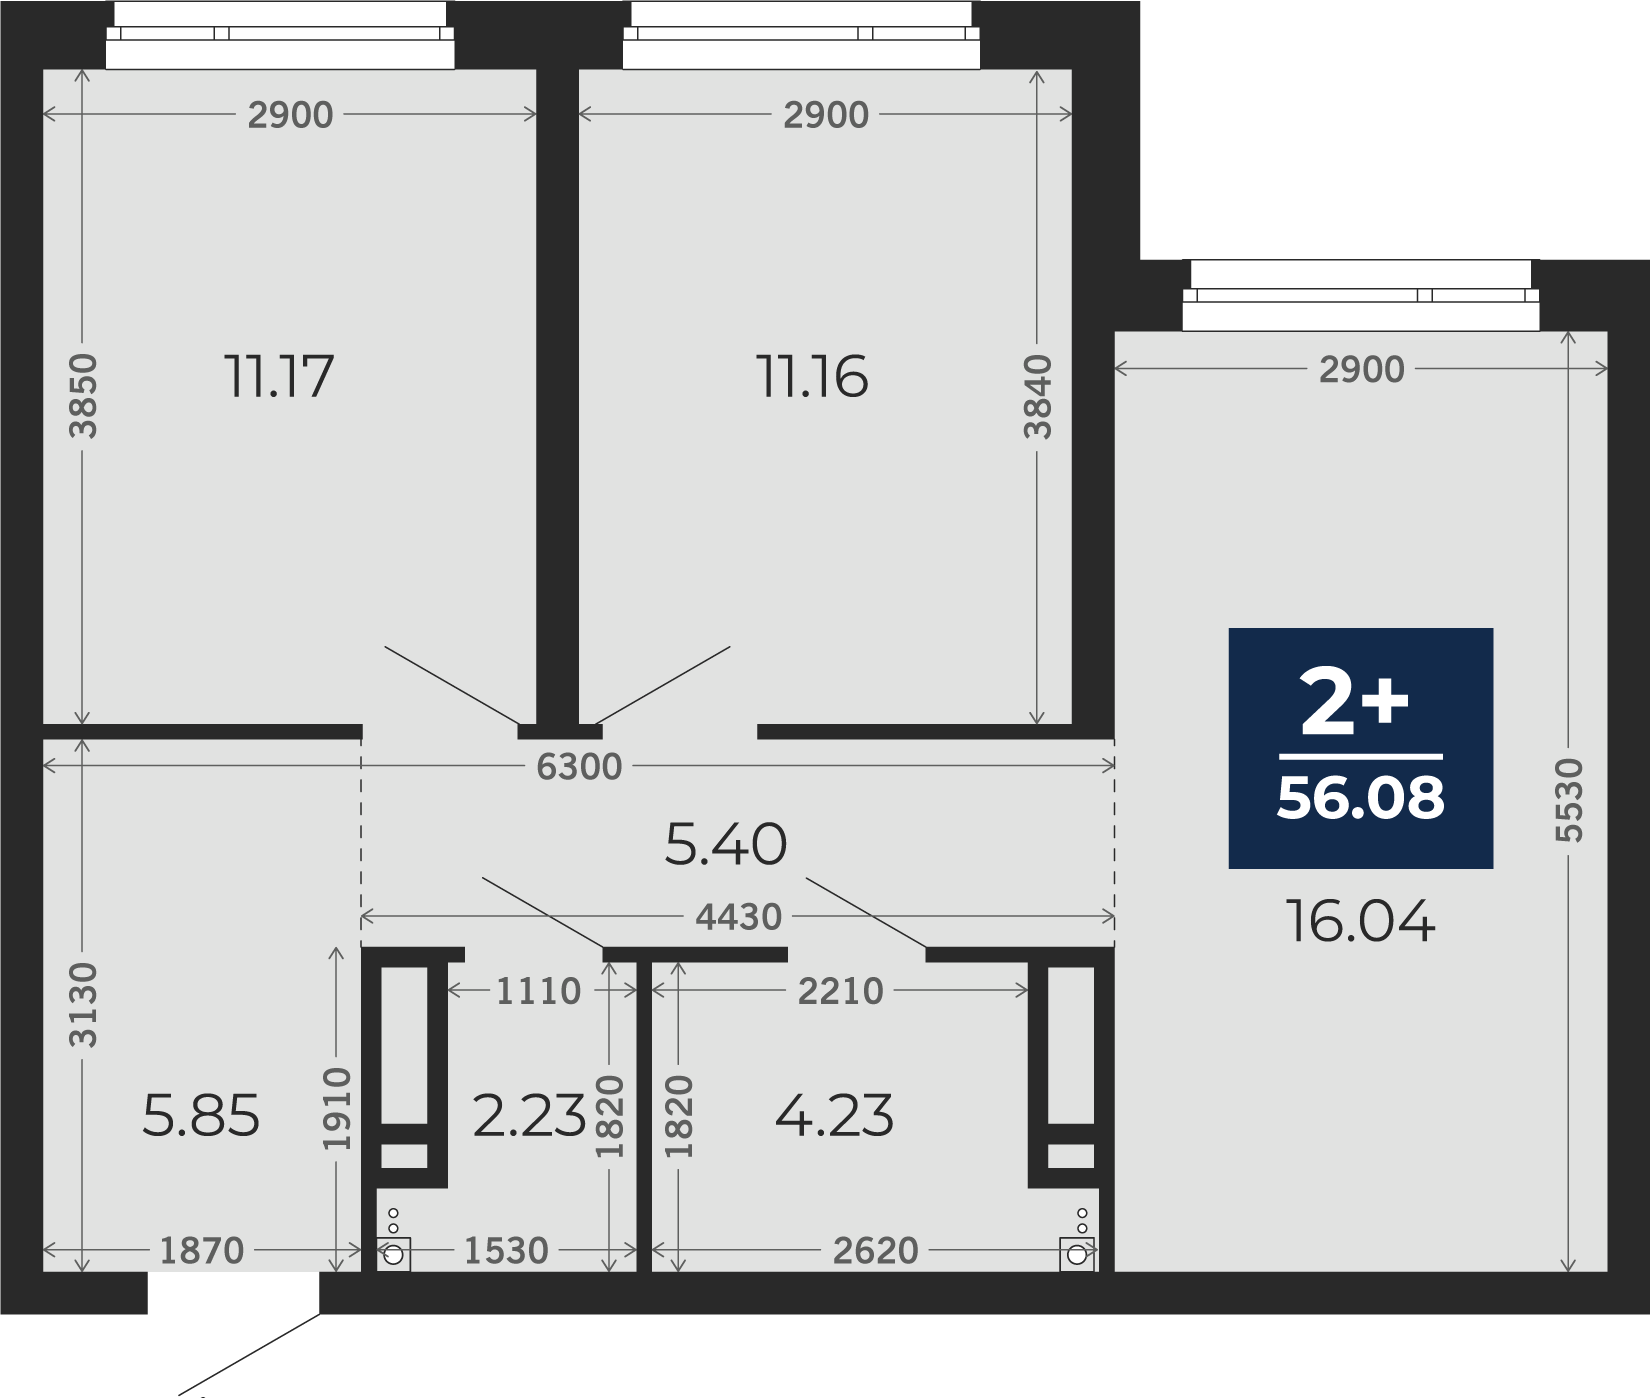 Квартира № 254, 2-комнатная, 56.08 кв. м, 15 этаж